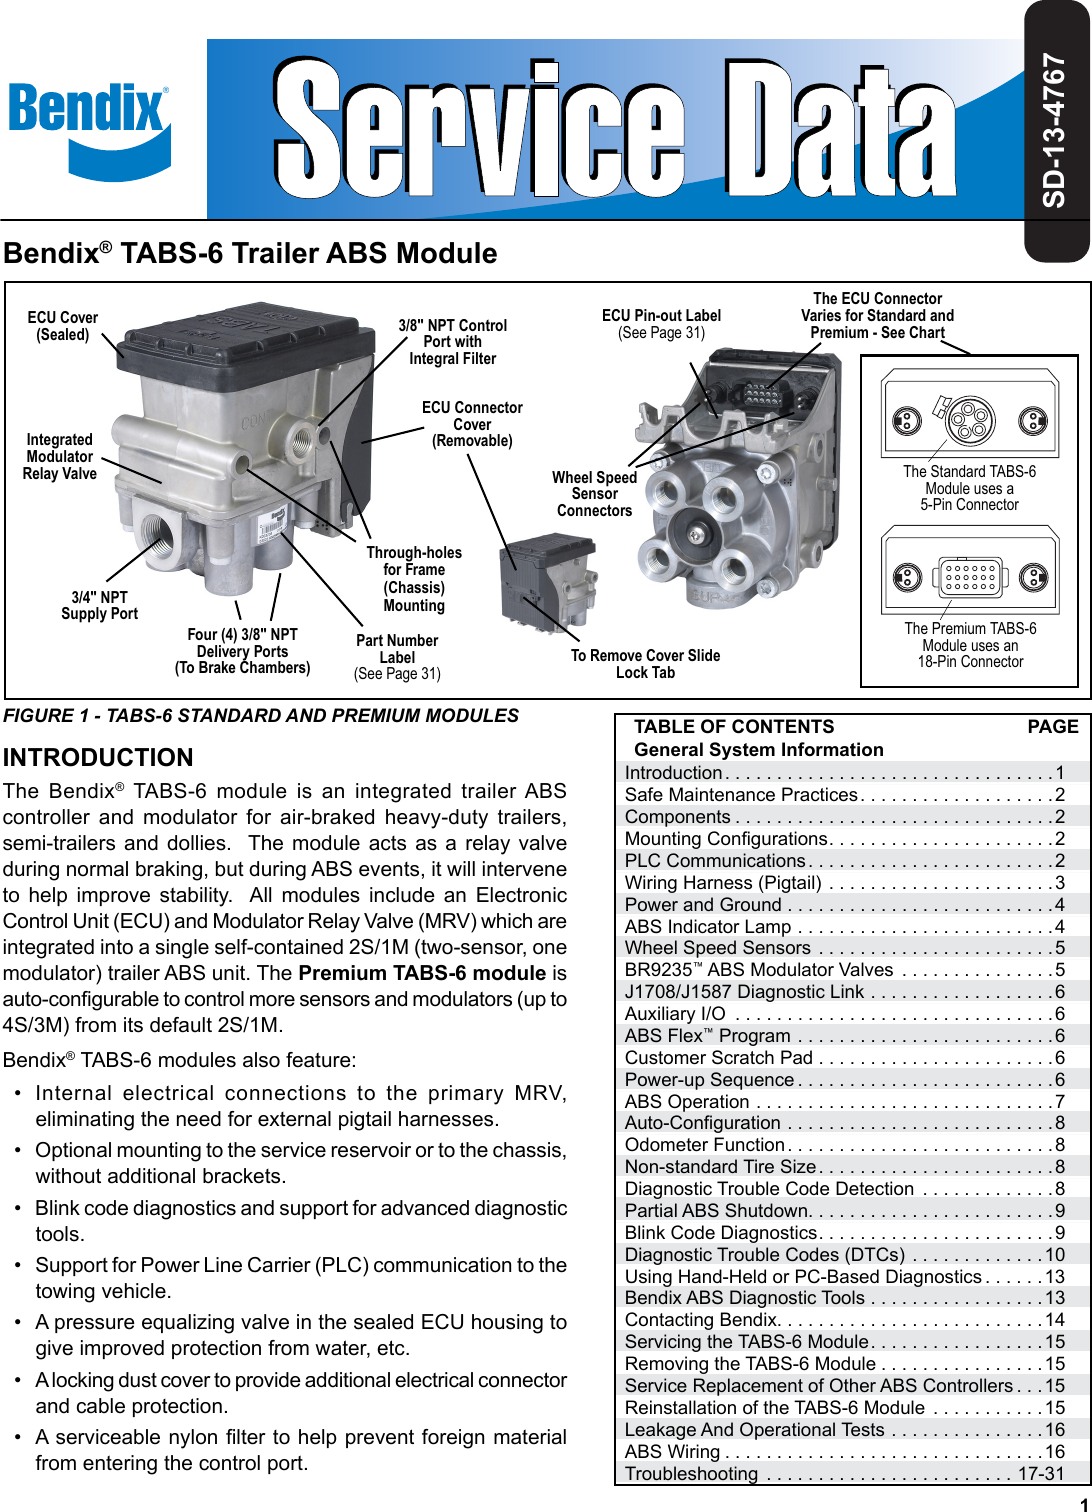 bendix abs trailer remote diagnostic unit (trdu) plc adapter